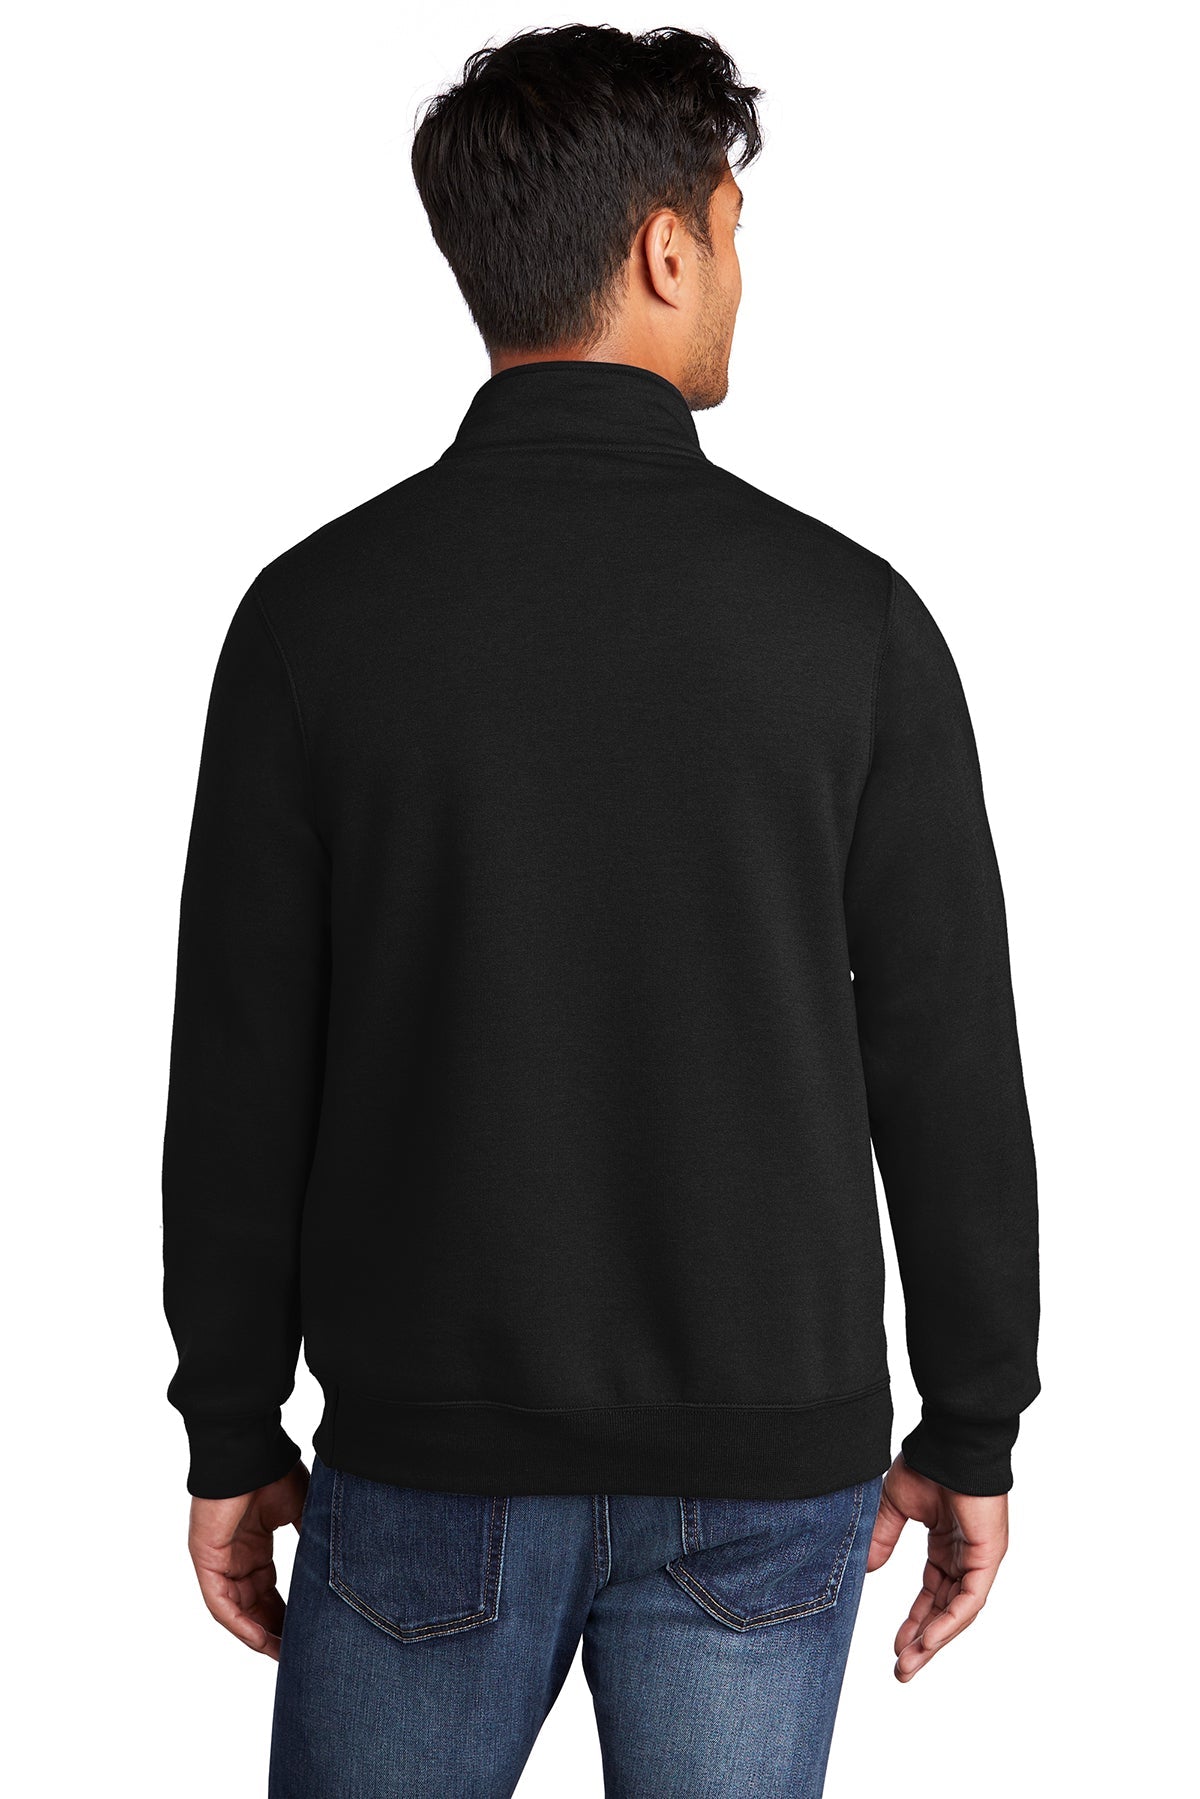 Port & Company Core Fleece 1/4-Zip Pullover Sweatshirt PC78Q Jet Black